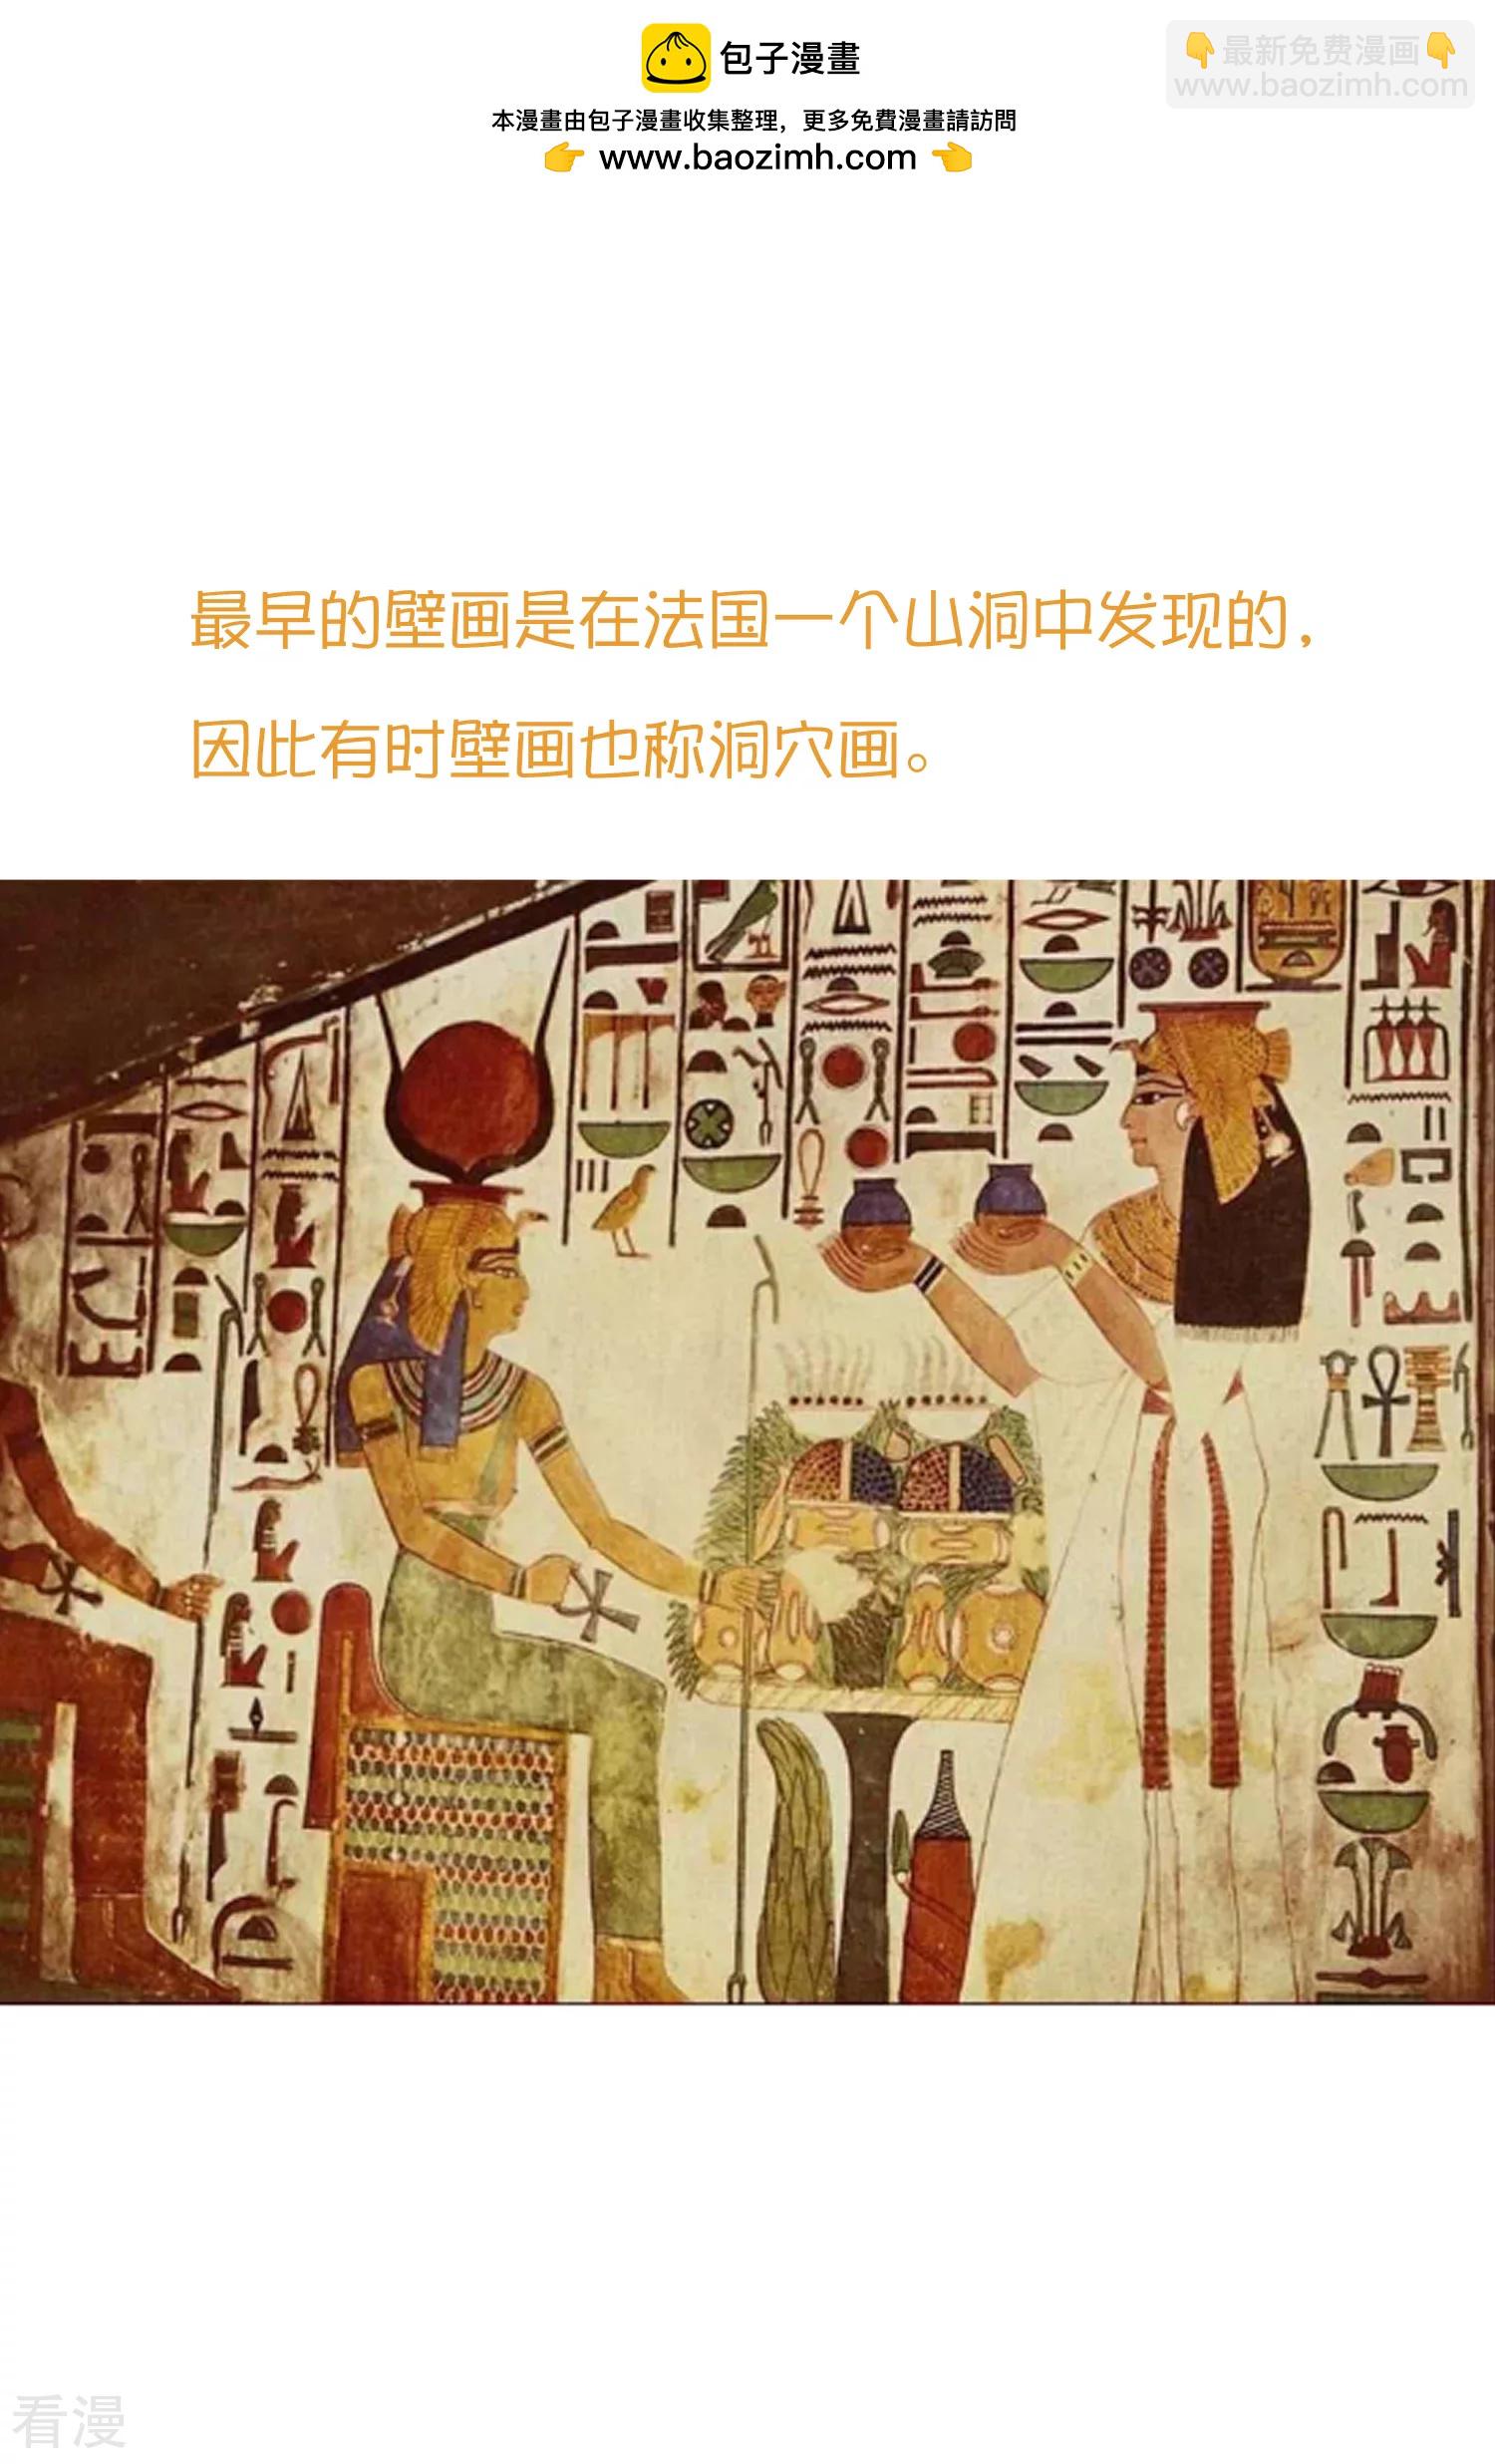 王的第一宠后 - 王的茶话会37 古埃及的壁画文化 - 2